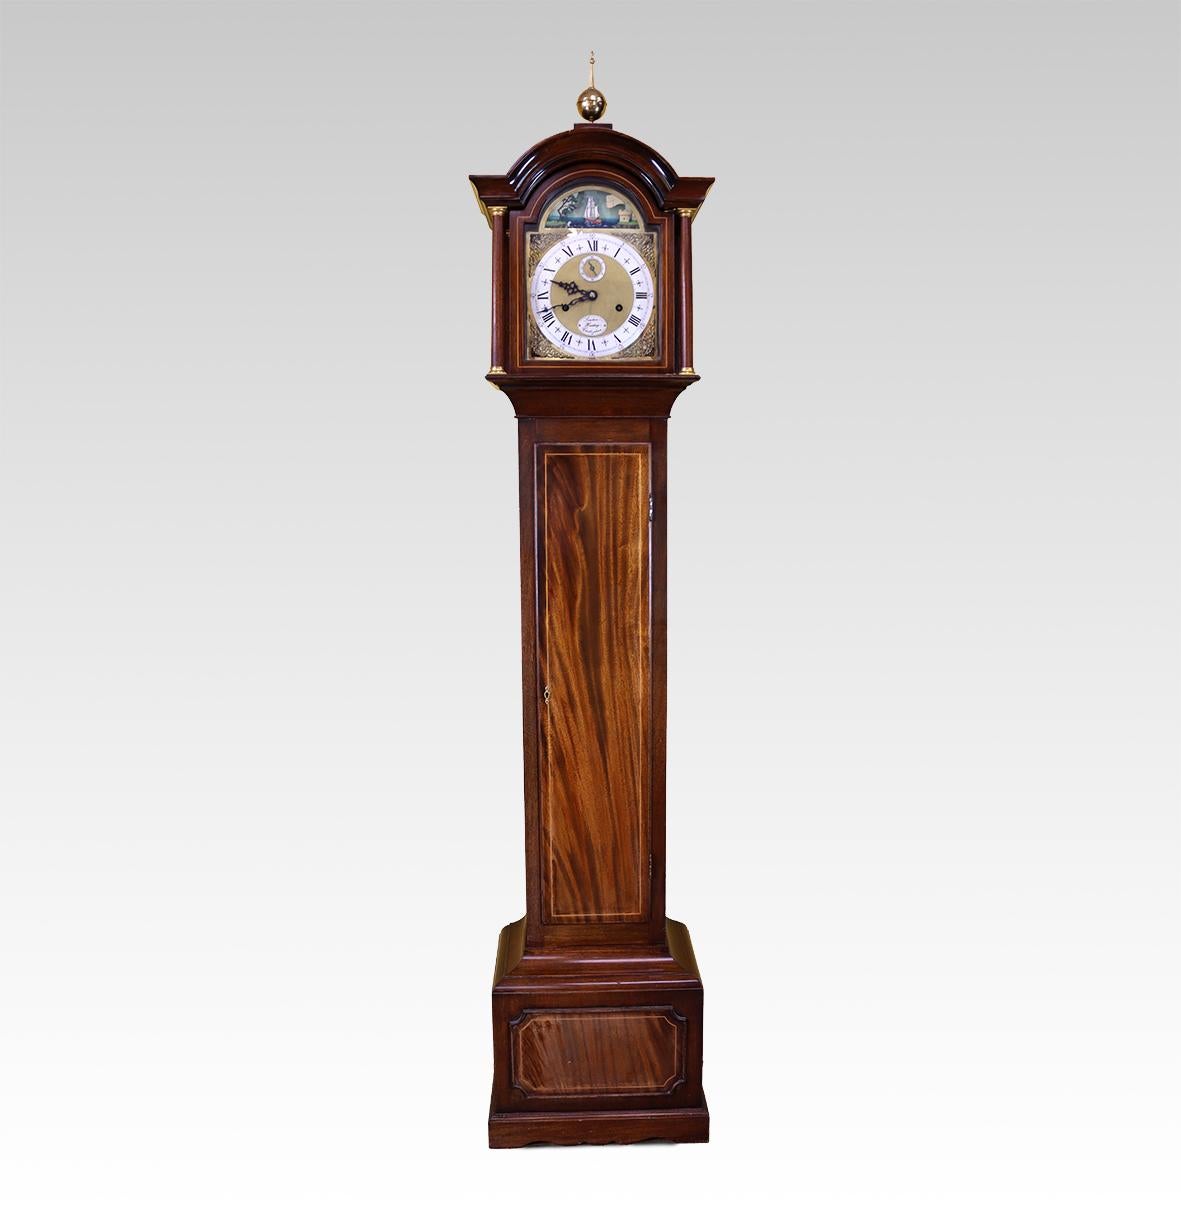 Making Works par l'un des derniers grands horlogers anglais travaillant de manière traditionnelle. Ce boîtier long miniature est doté d'un mouvement à poids de huit jours et d'un bateau à bascule automate dans l'arc supérieur du cadran (voir la